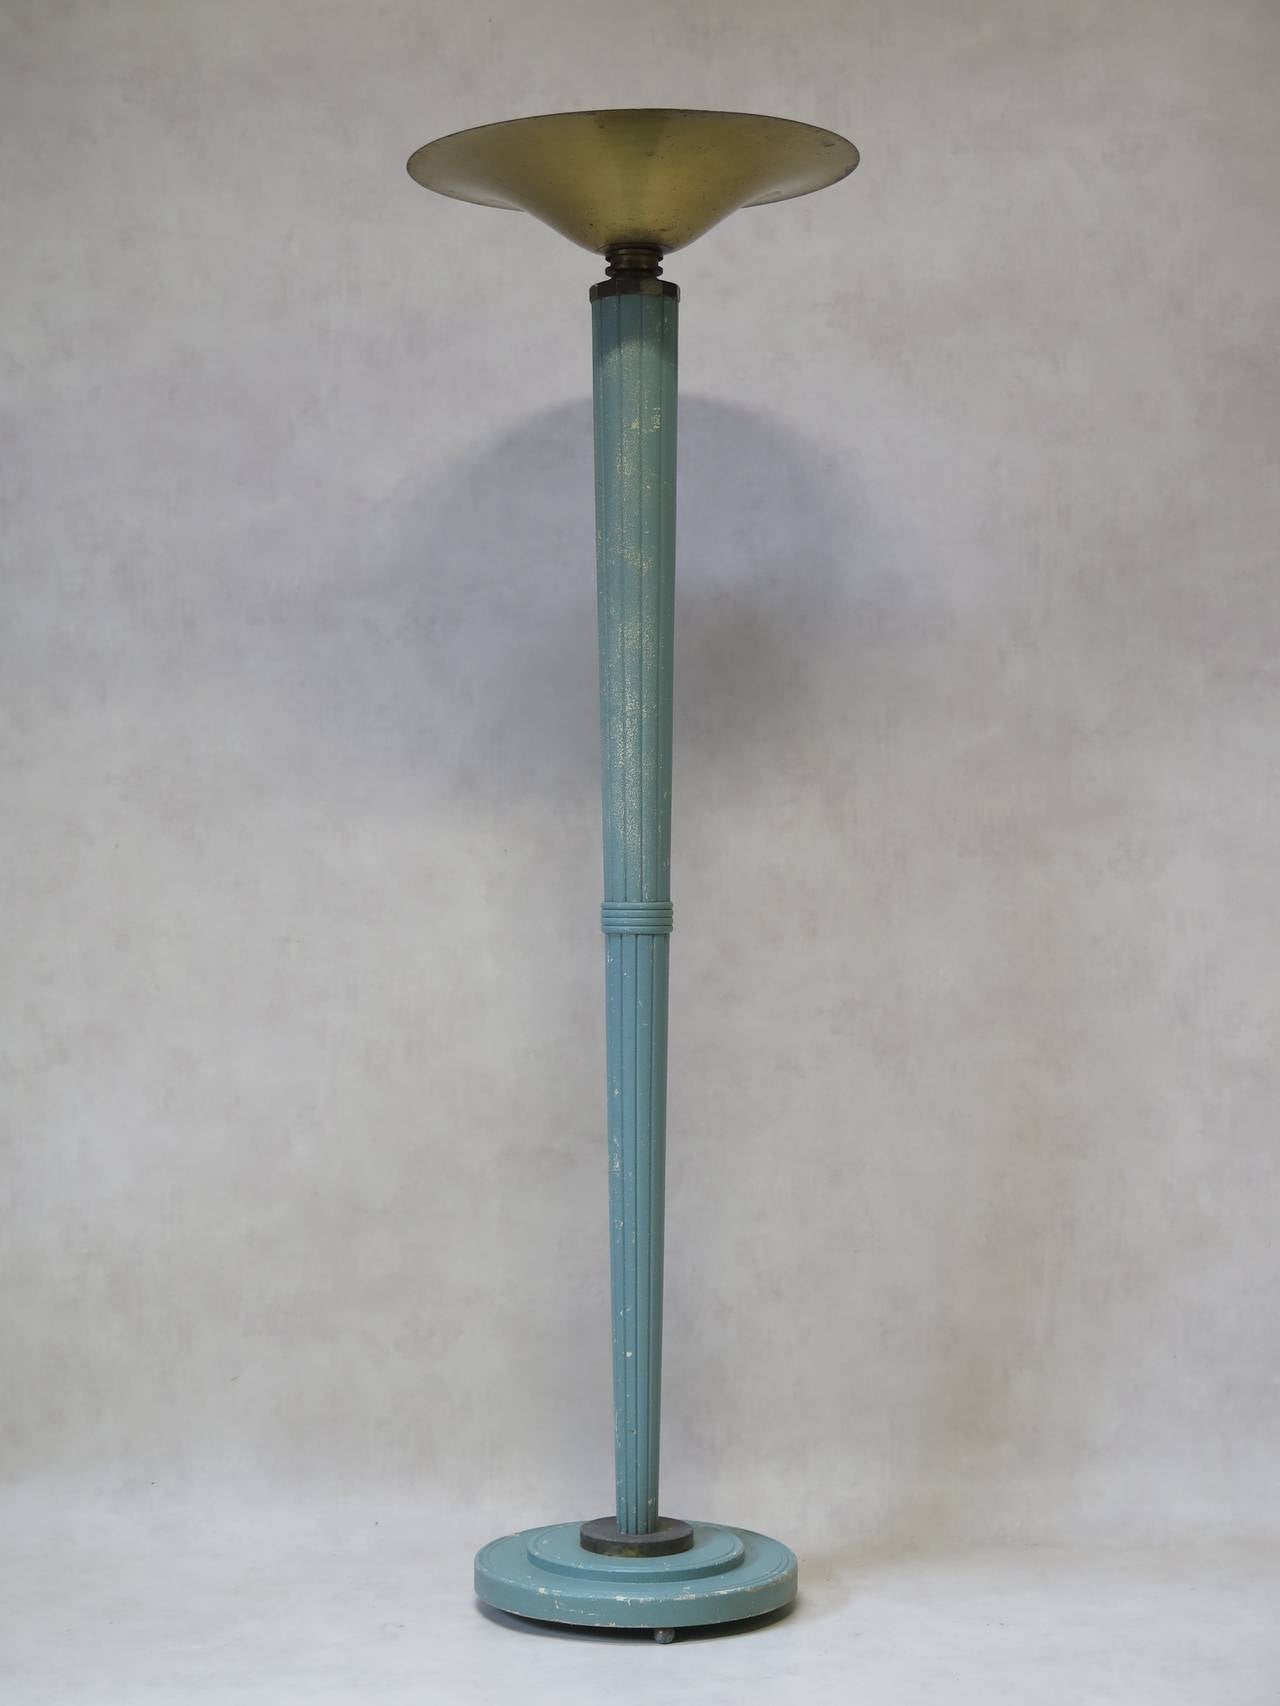 Élégant lampadaire Art déco des années 1930 avec une colonne en bois effilée et anglée, peinte en bleu-vert clair. Base étagée. La colonne supporte une grande coupe en laiton oxydé.